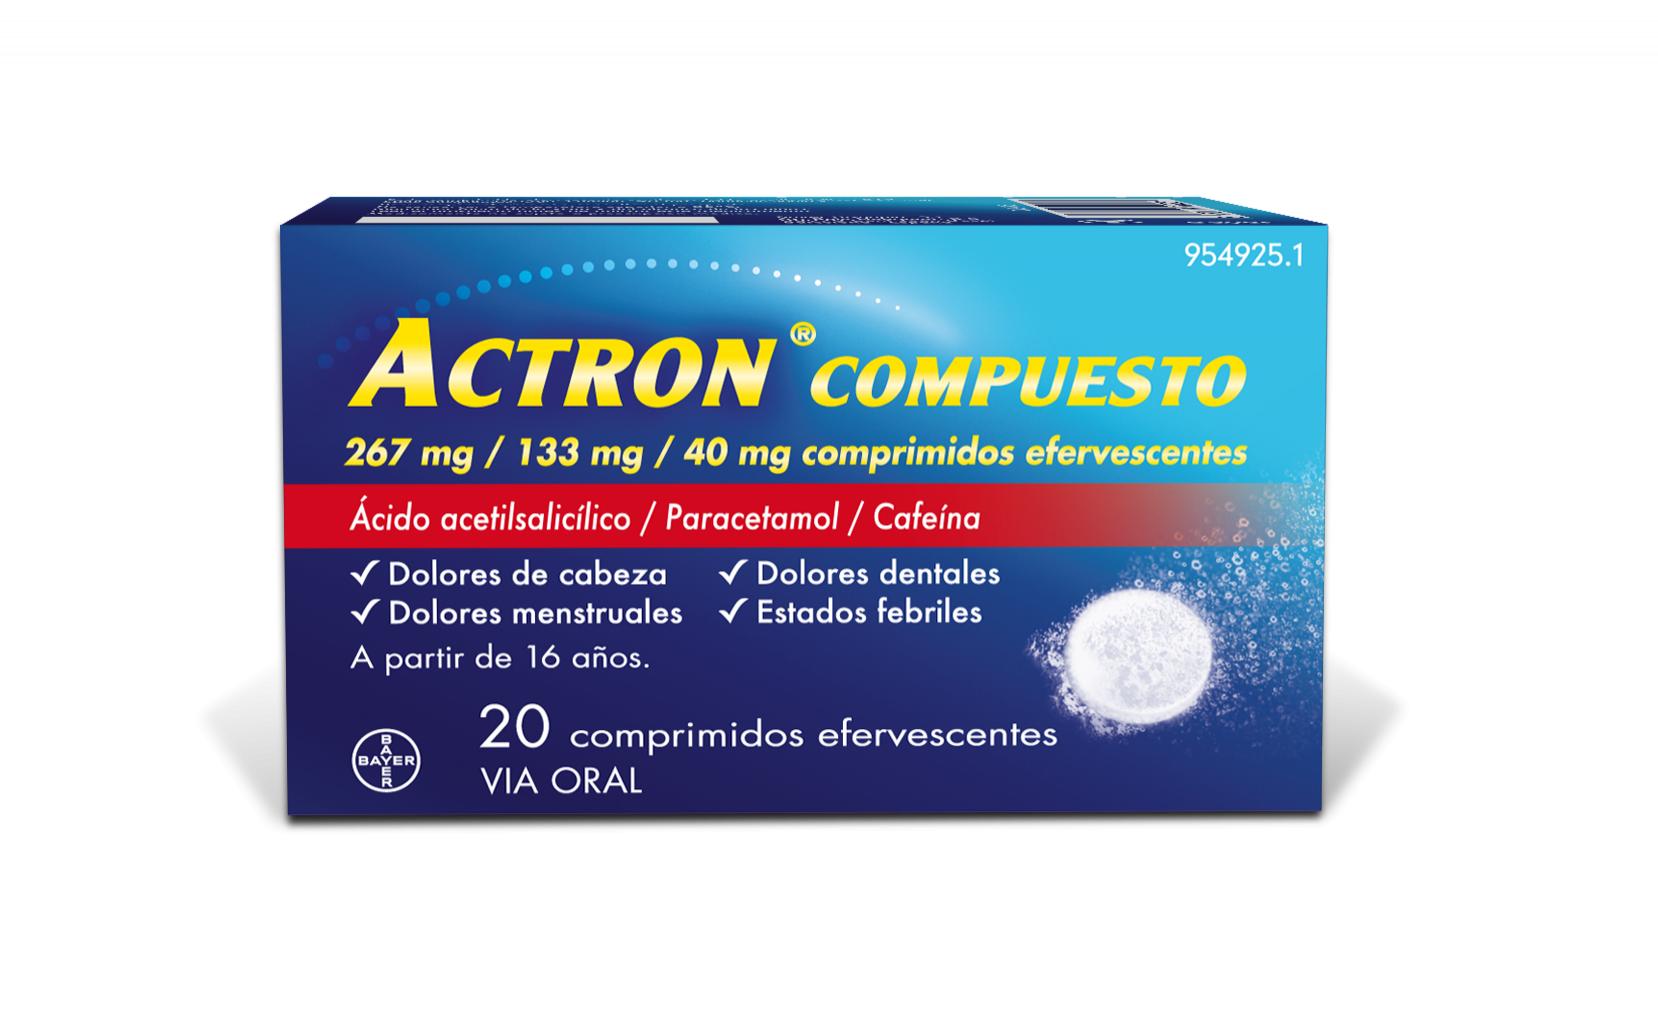 ACTRON COMPUESTO 20 COMPRIMIDOS EFERVESCENTES